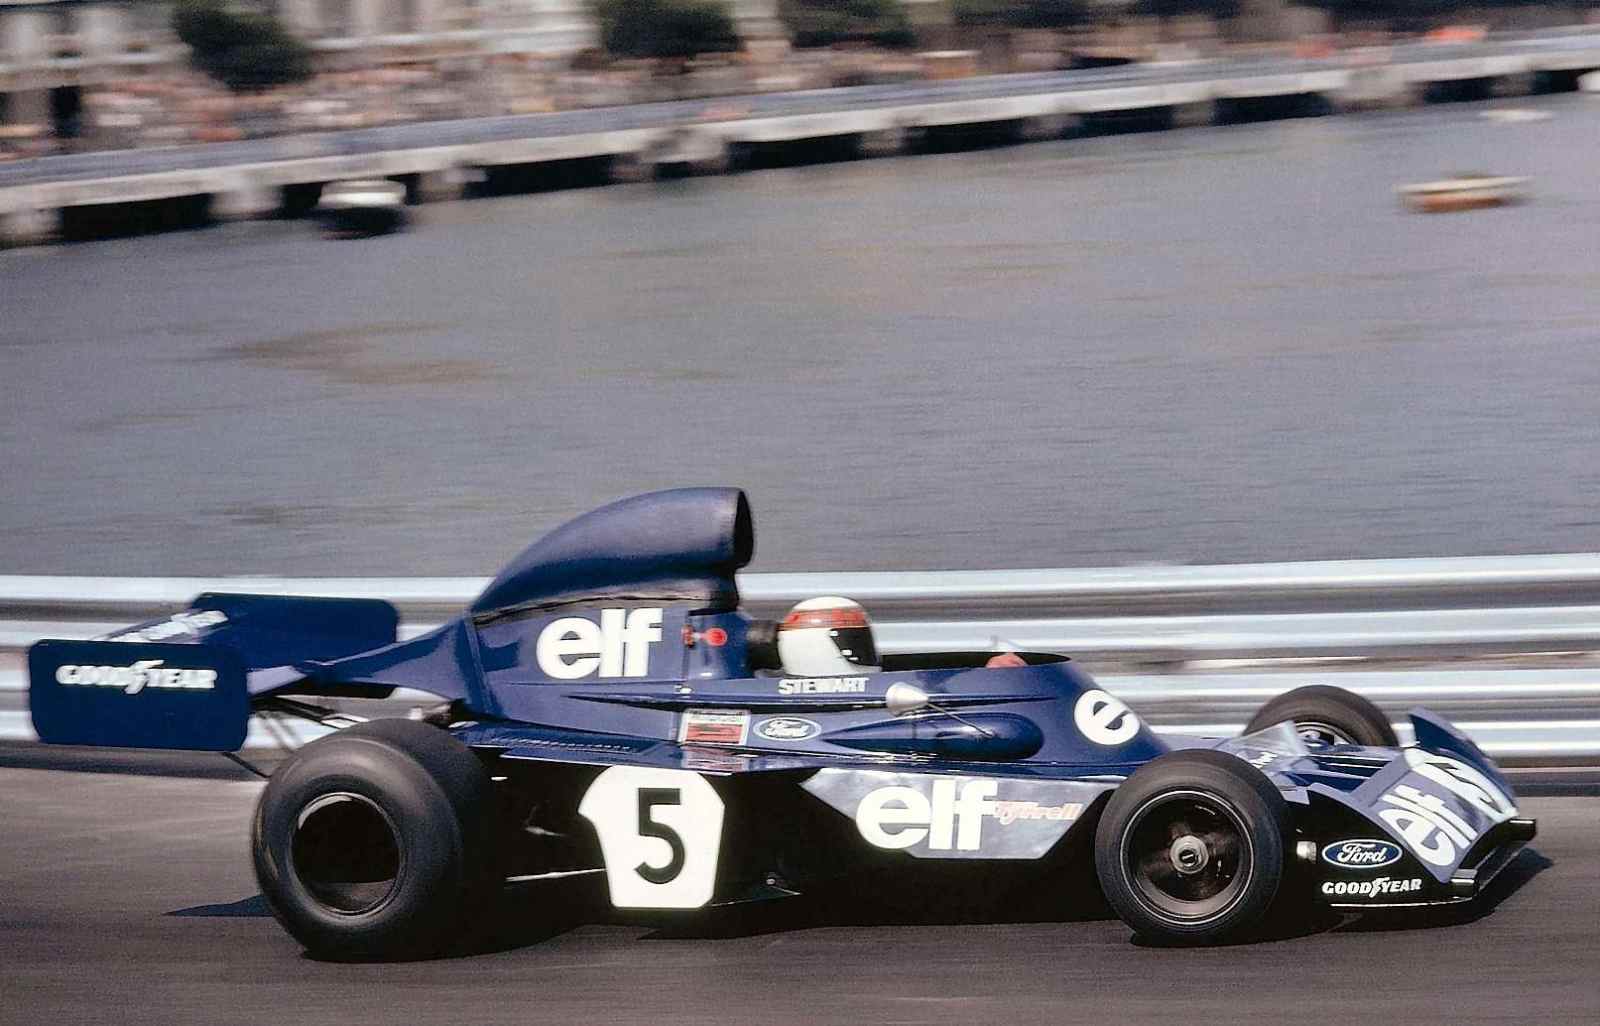 Após dois títulos mundiais, Stewart quebrou o recorde de vitórias no GP da Holanda de 1973. O escocês ainda venceria mais uma corrida, chegando a 27 no total, e o campeonato daquele ano